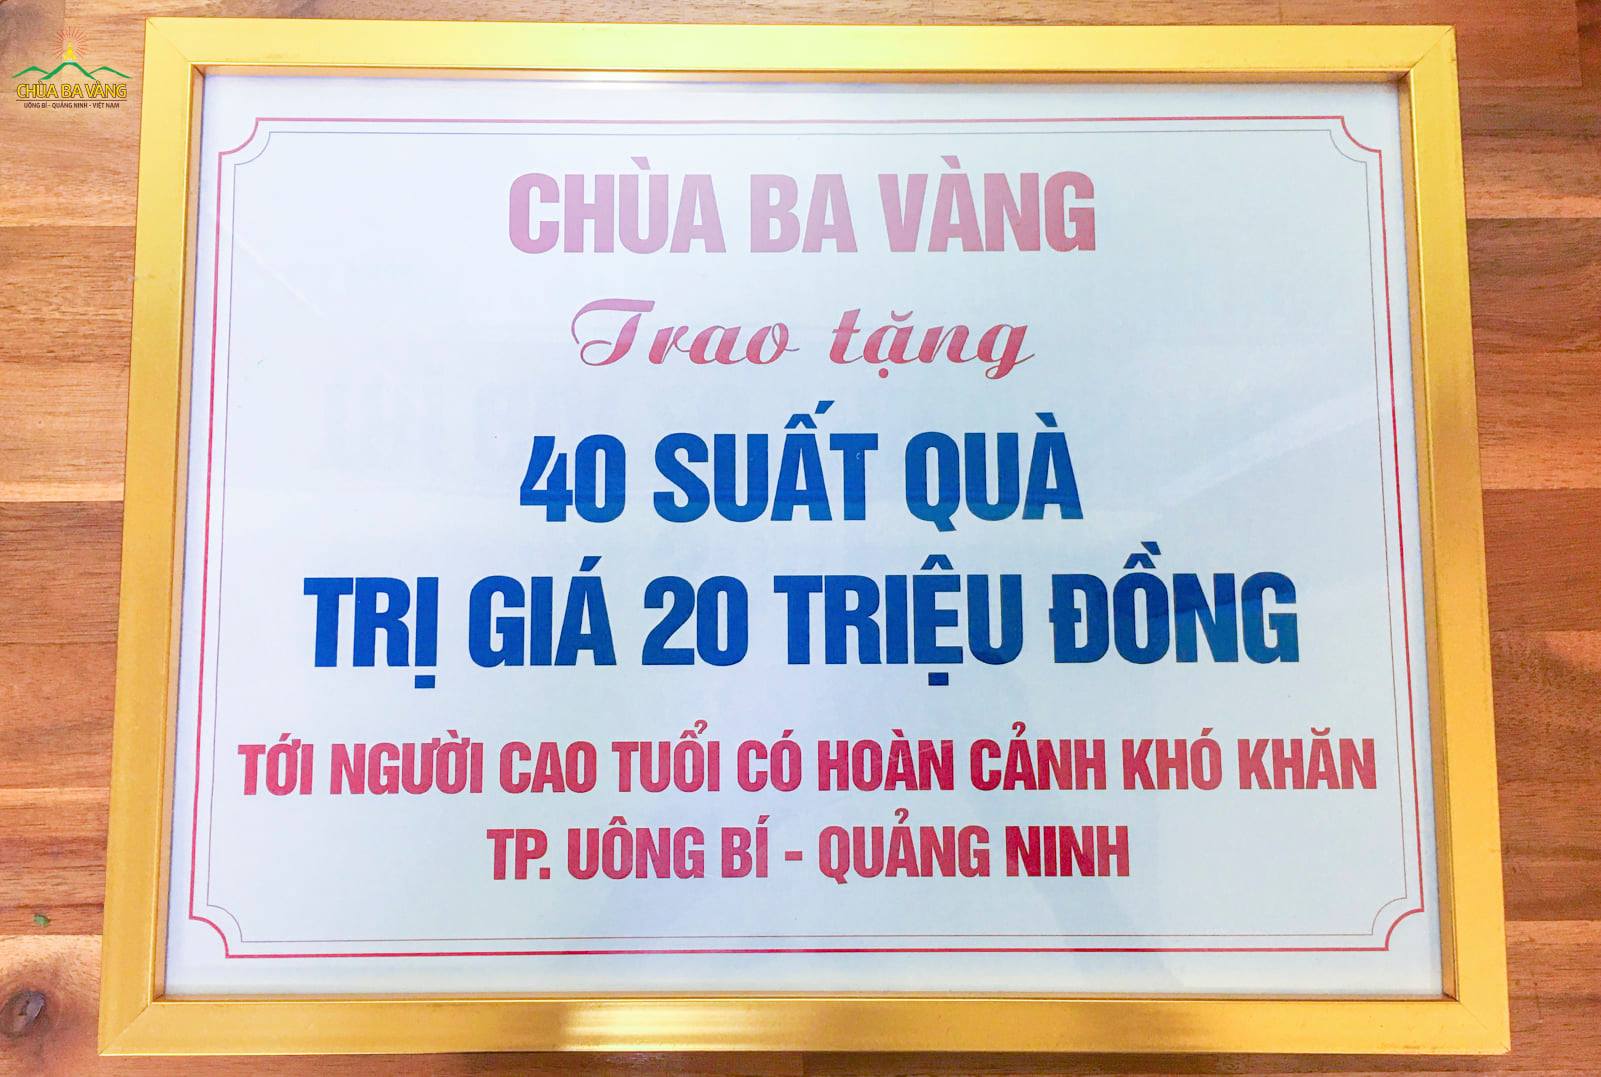 Biển trao tặng phần quà của chùa Ba Vàng đến những người cao tuổi có hoàn cảnh khó khăn trên địa bàn thành phố Uông Bí